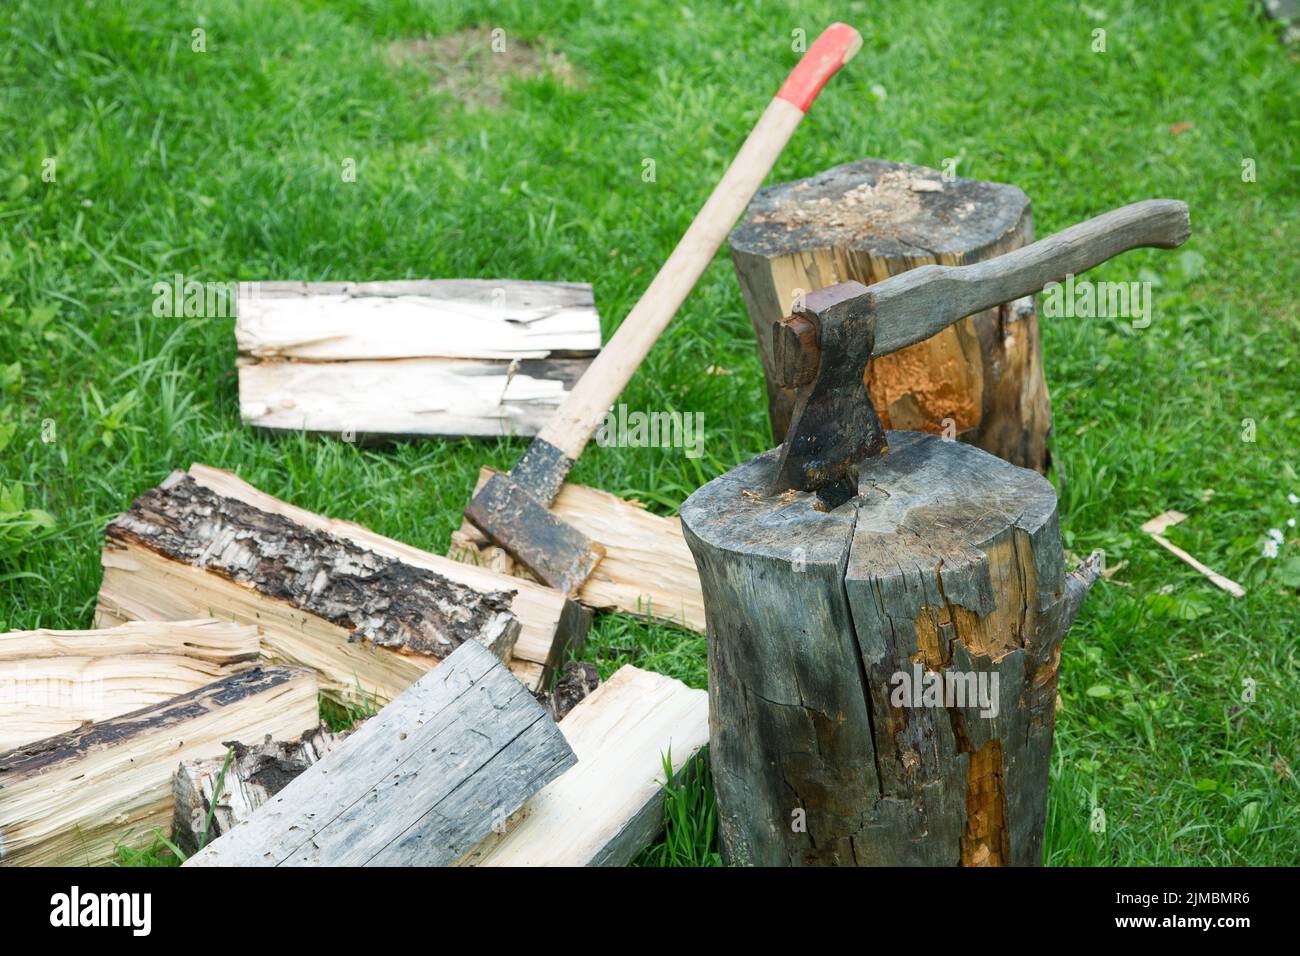 AX e scissione su legna da ardere tagliata in un giorno d'estate Foto Stock